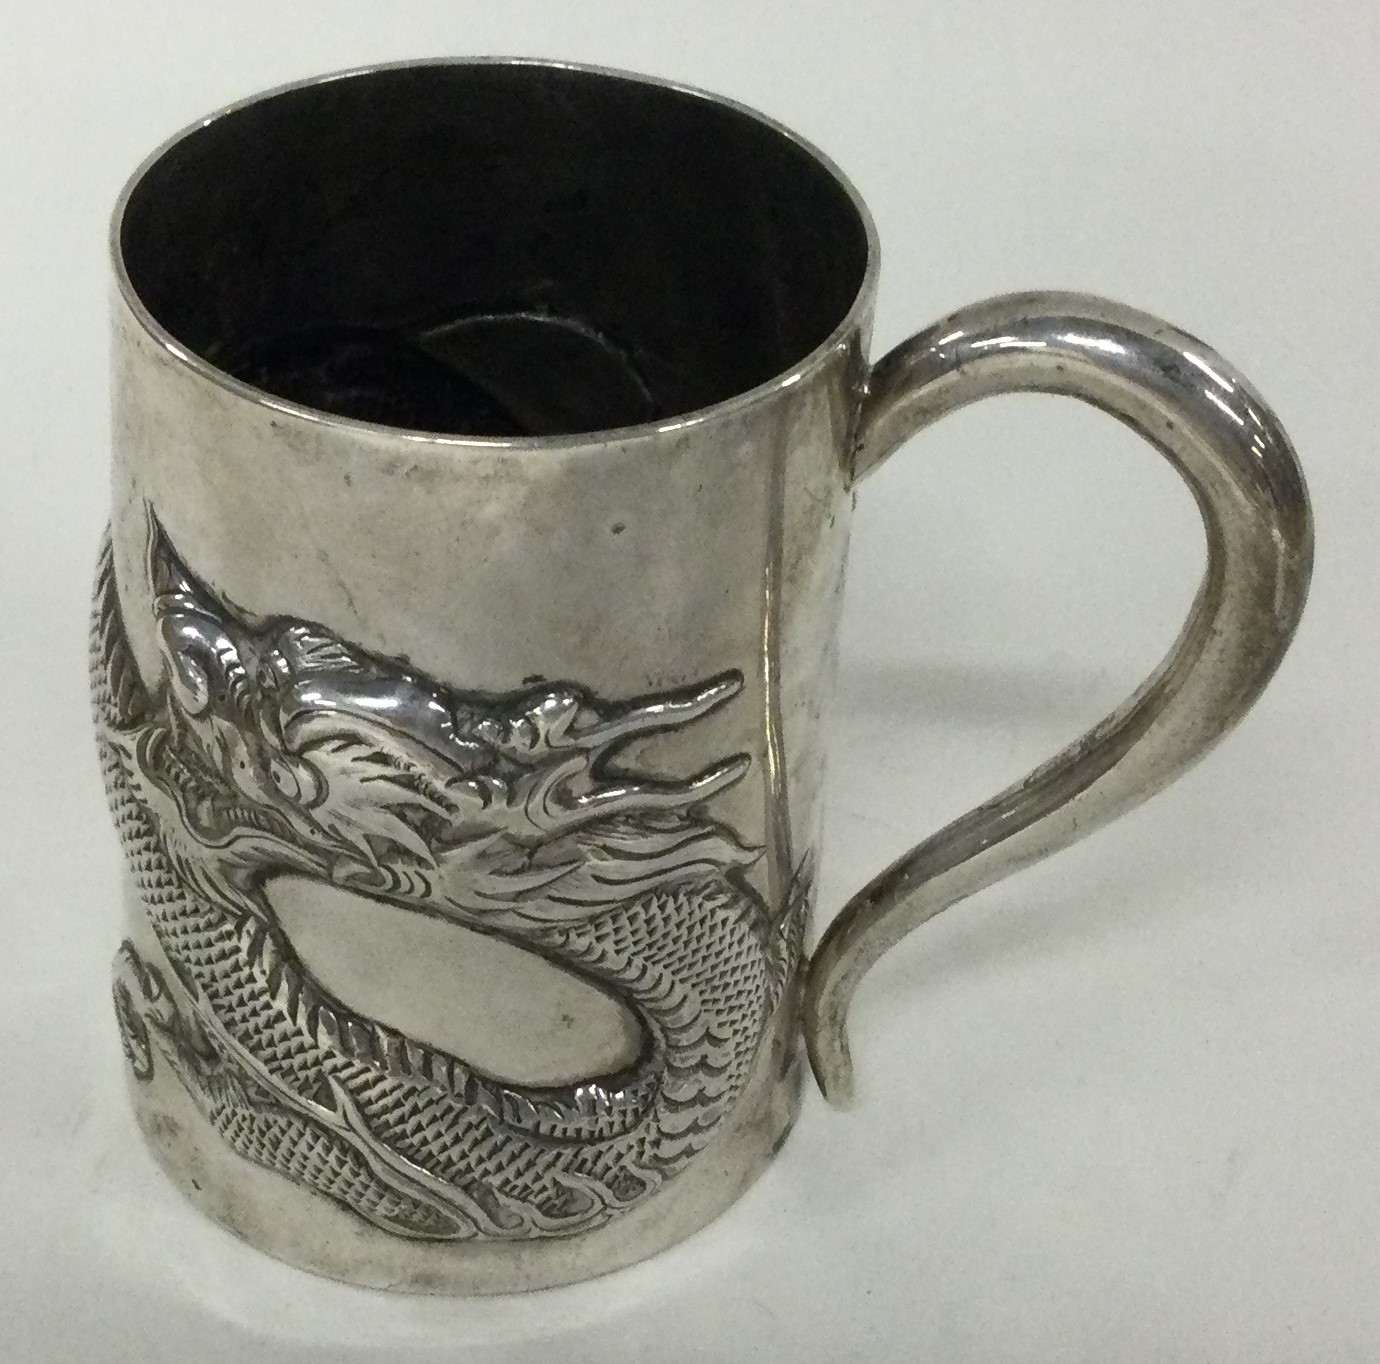 WANG HING: A Chinese silver export mug.